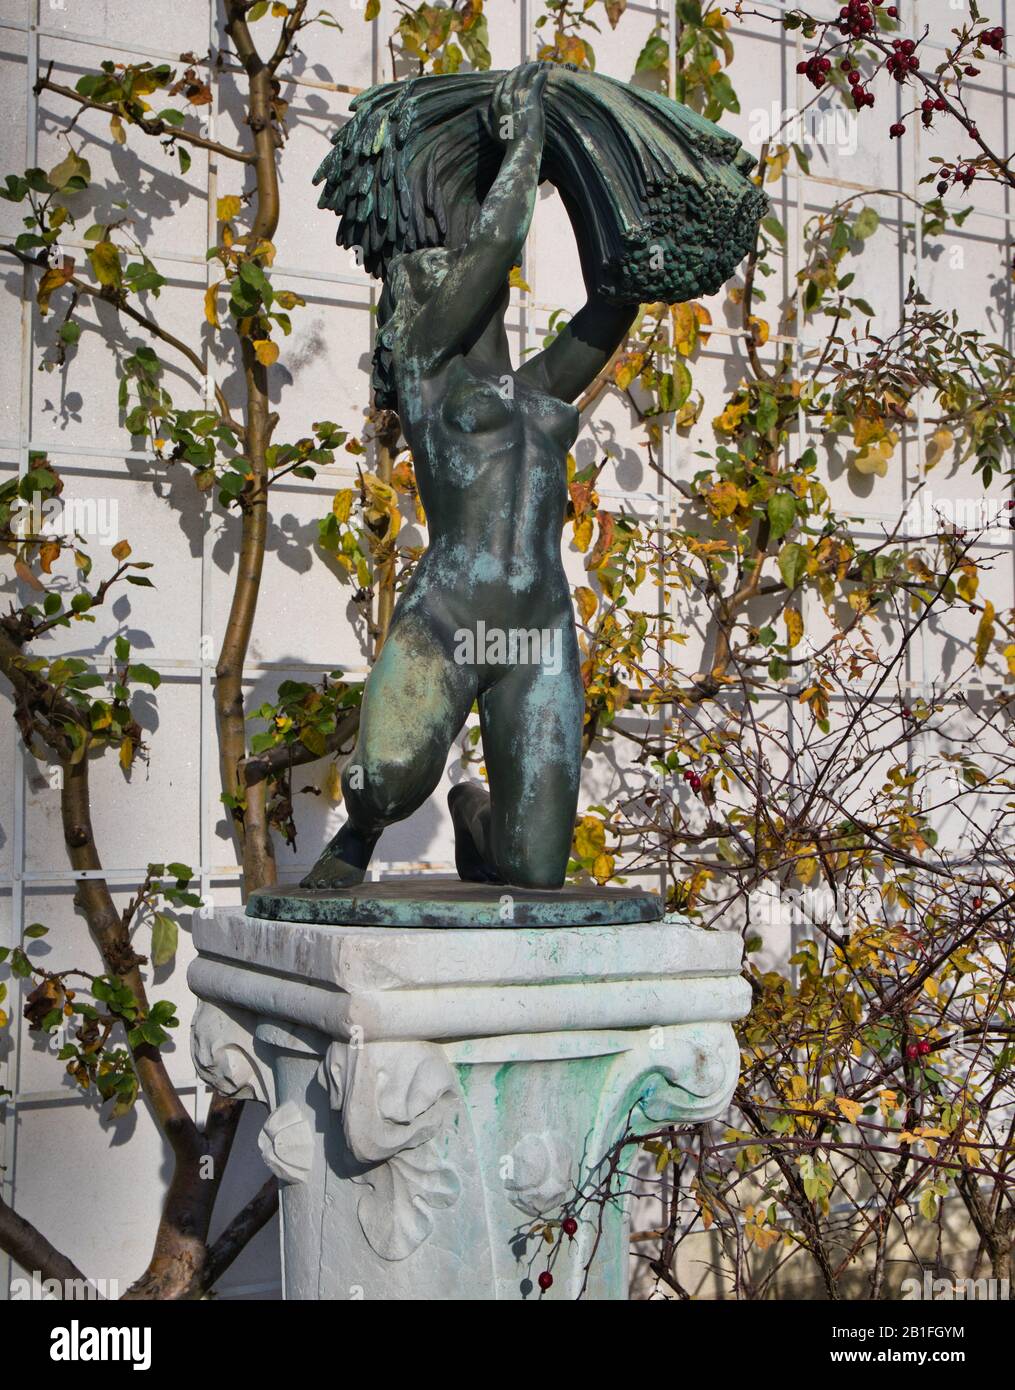 Bronzeskulptur 'Harvest' von Ivar Johnsson in Waldermasudde, ehemaliges Herrenhaus von Prins Eugen, heute Museum und öffentlicher Park, Djurgarden, Stockholm, Schweden Stockfoto